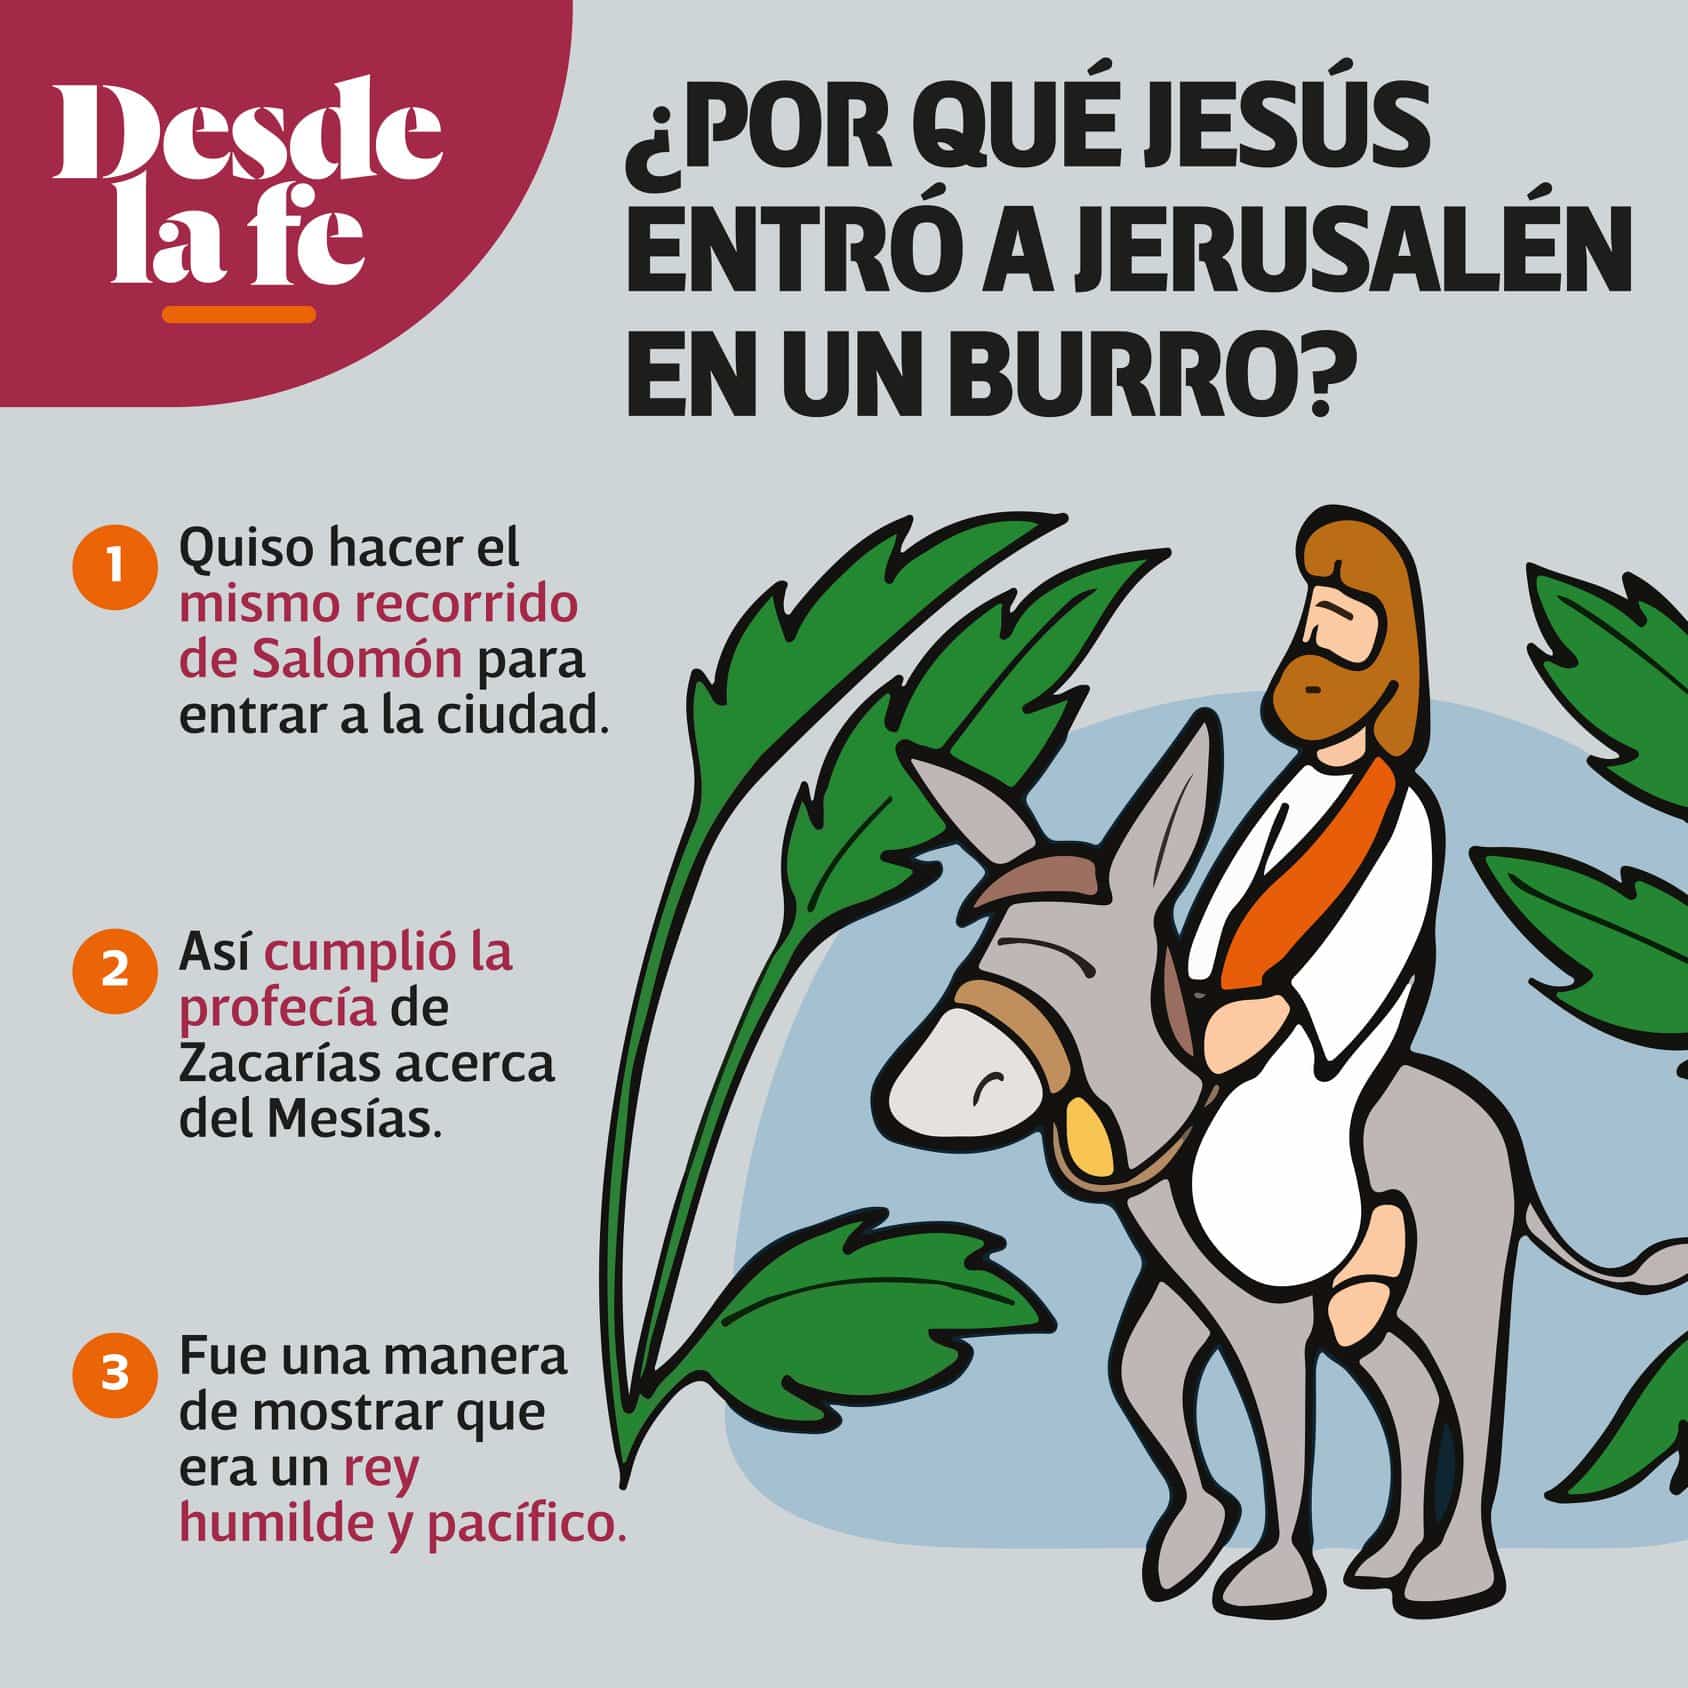 ¿Por qué Jesús entró en burro el Domingo de Ramos?